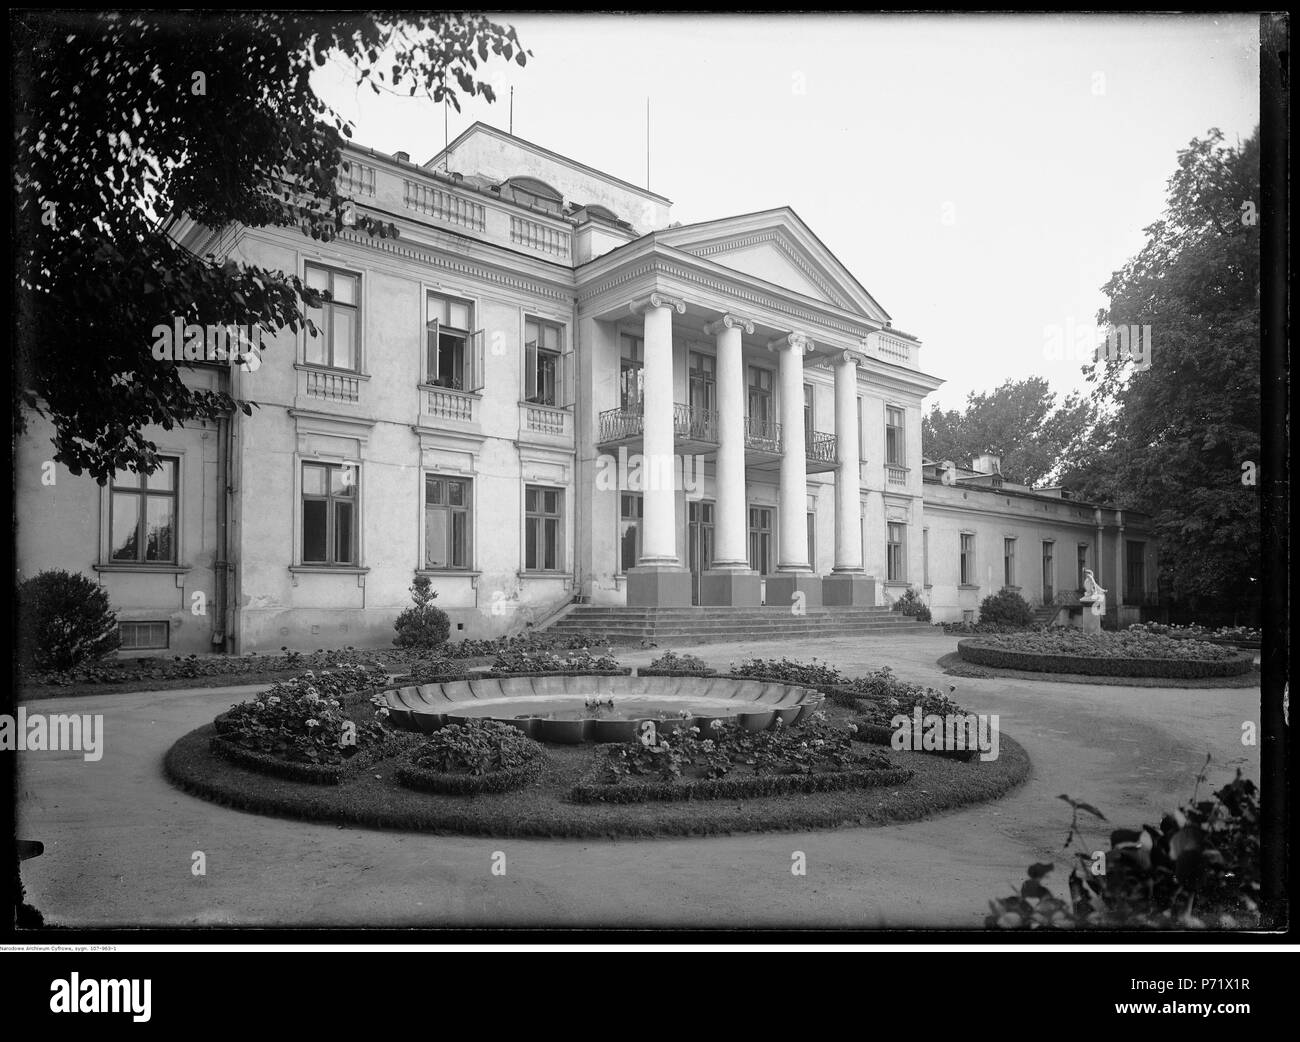 57 Narcyz Witczak-Witaczyński - Belweder w Warszawie (107-963-1) Stock Photo